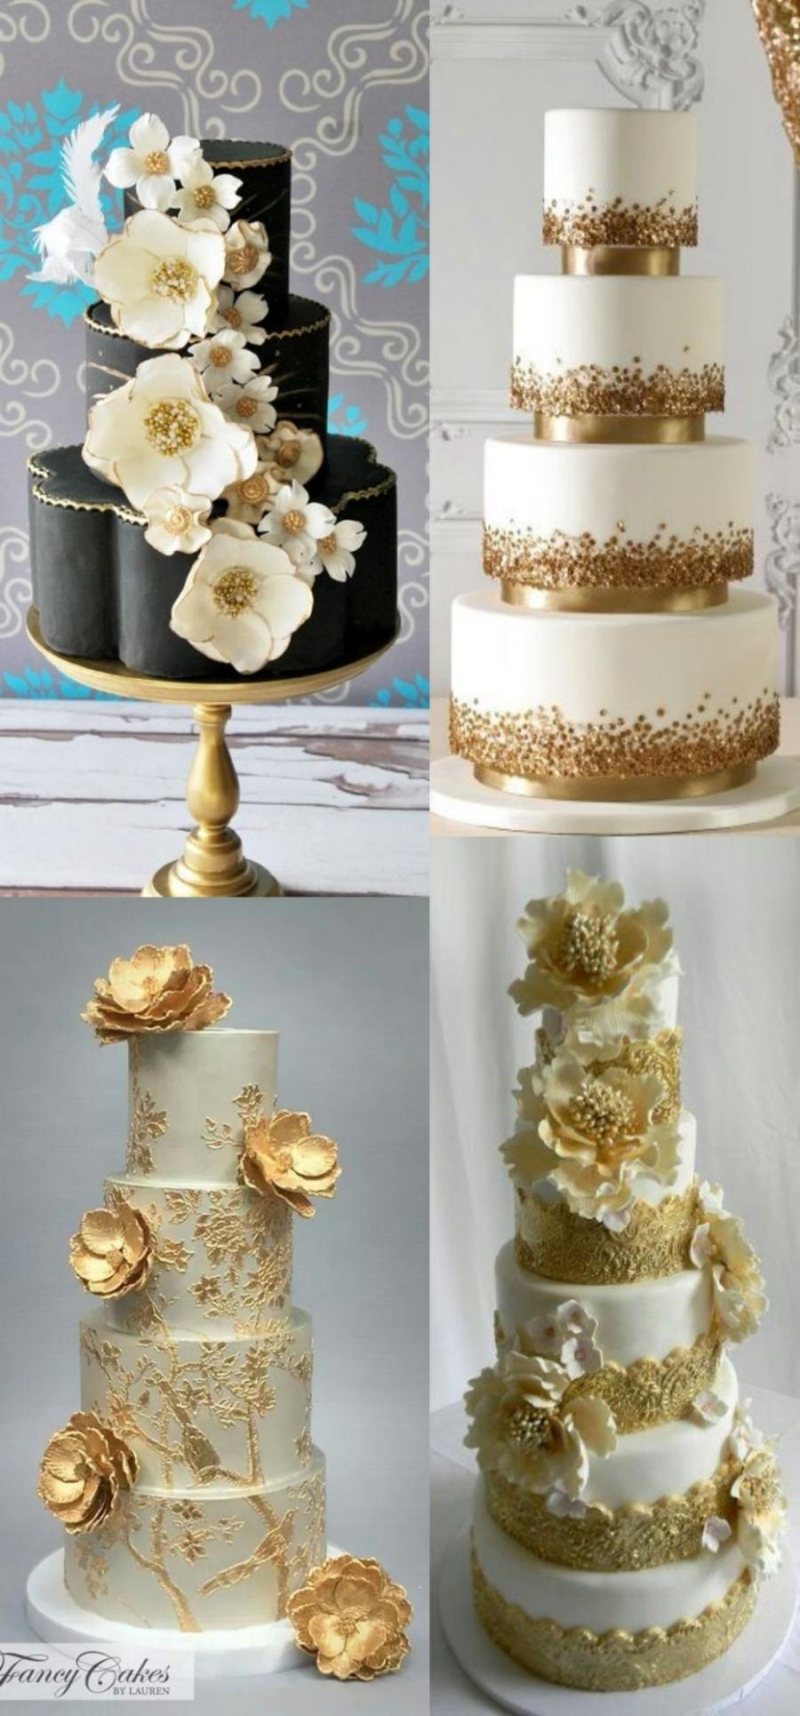 20 ideias para festa de bodas de ouro - decoração do bolo